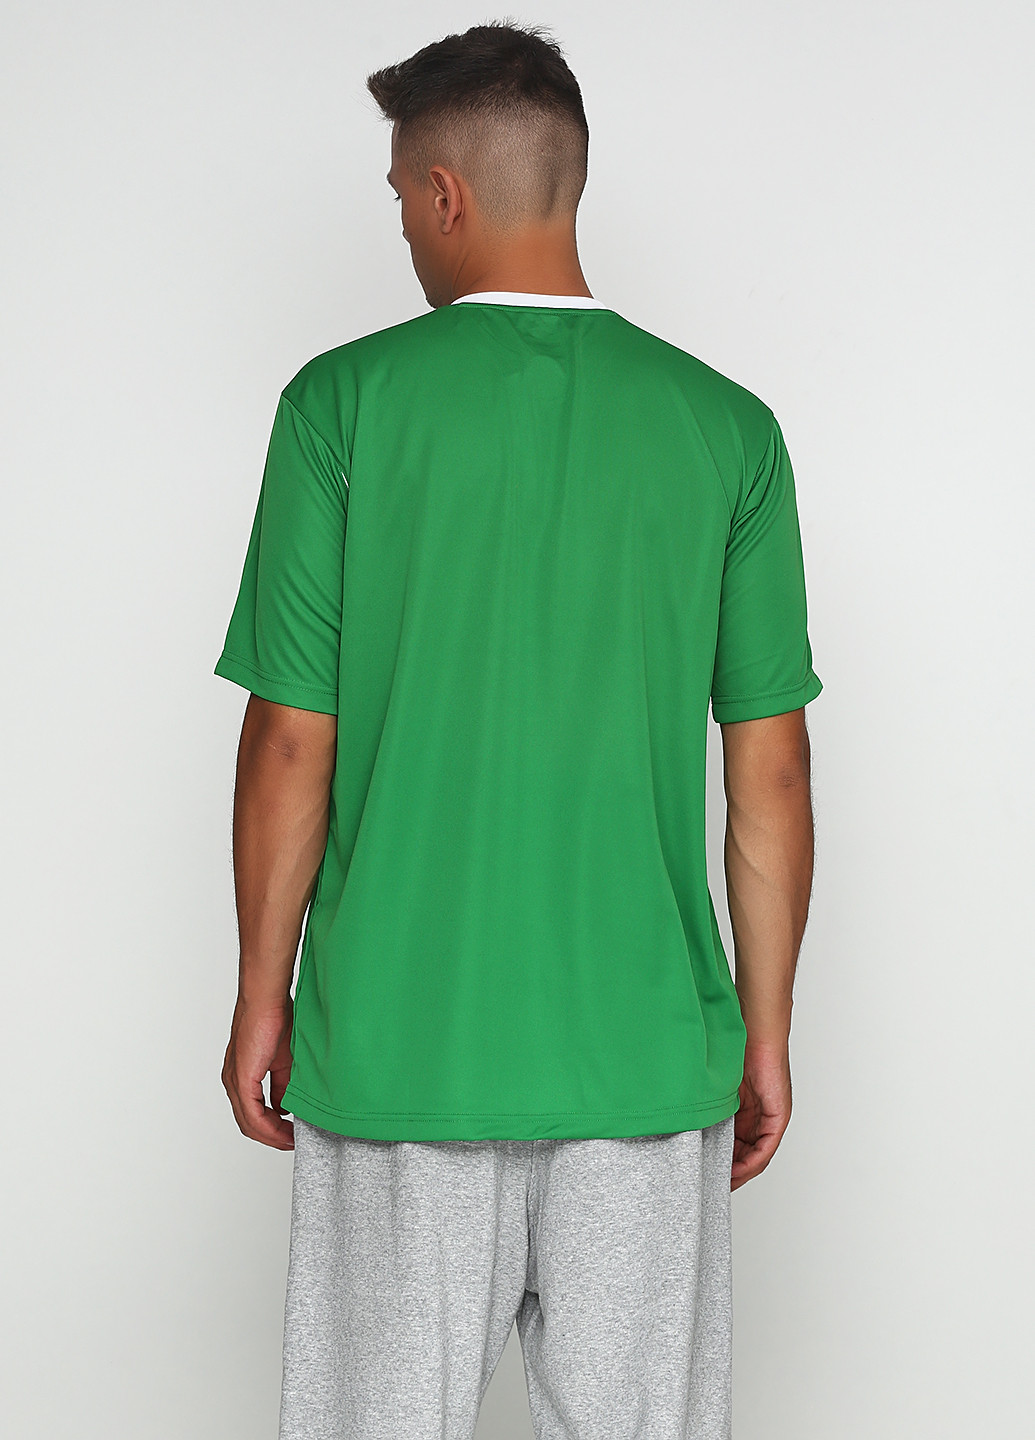 Зеленая футболка Umbro